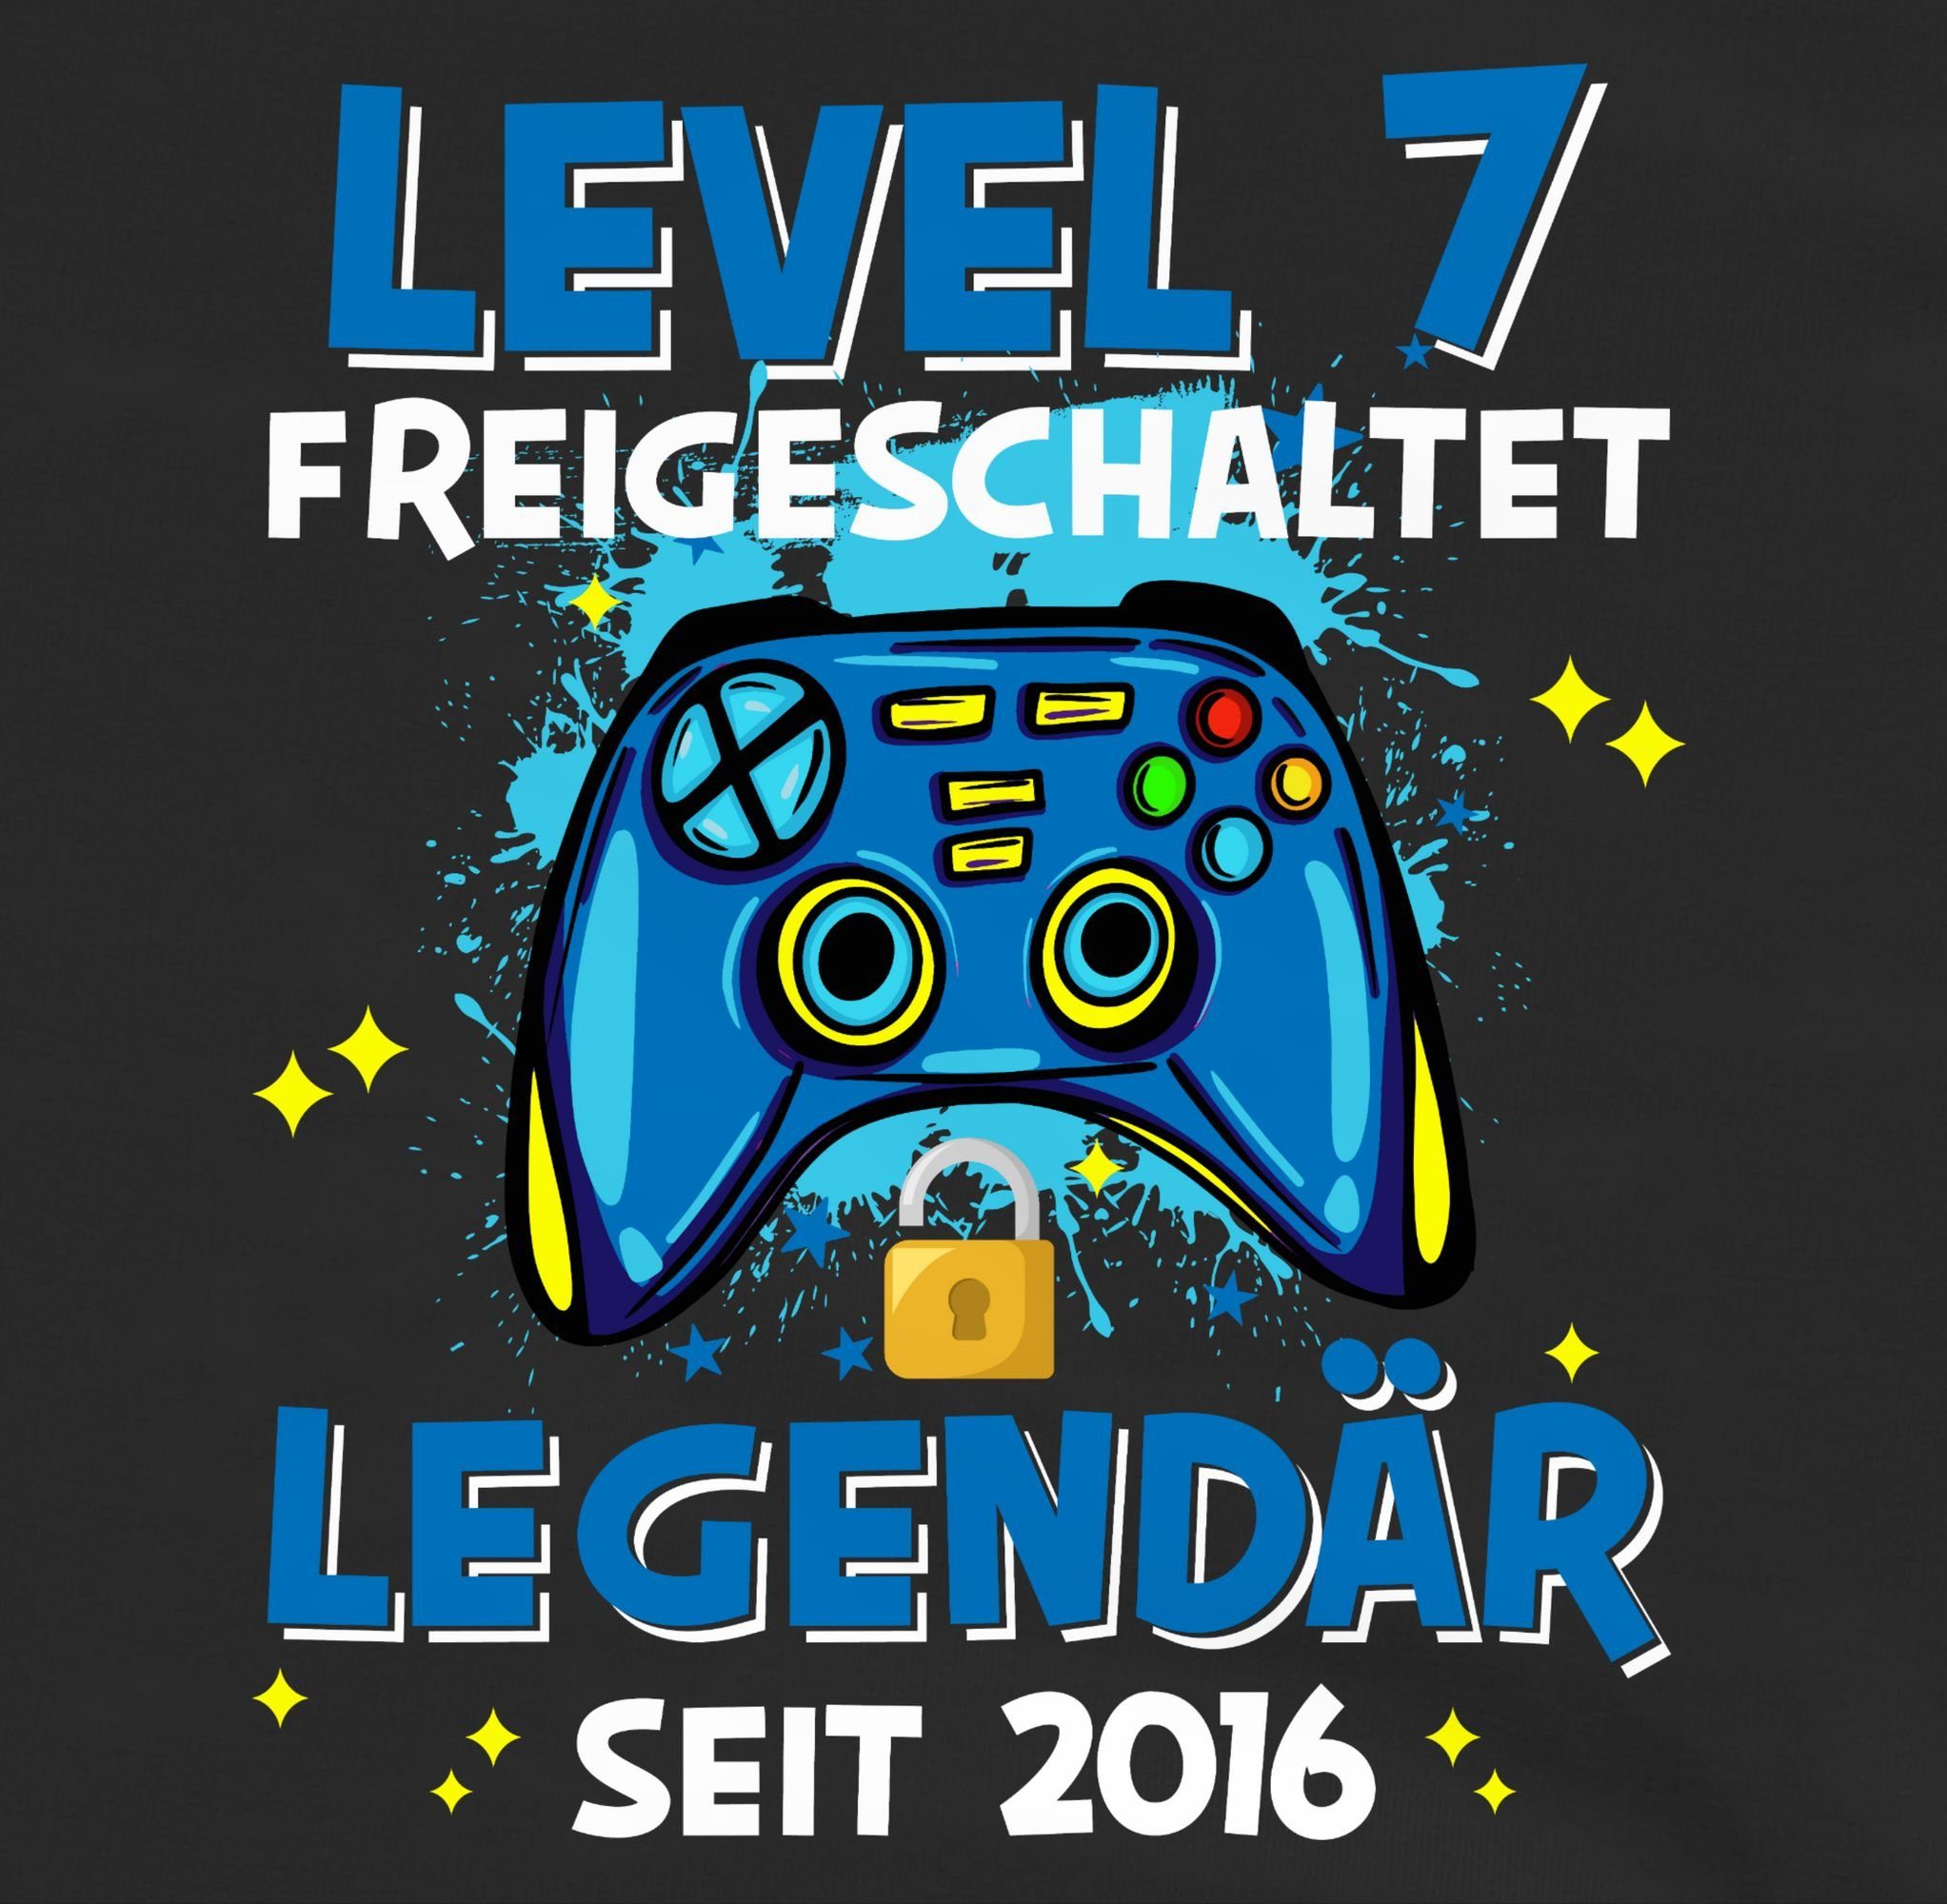 Shirtracer Sweatshirt Level 7 freigeschaltet 2016 7. Schwarz Legendär Geburtstag seit 1